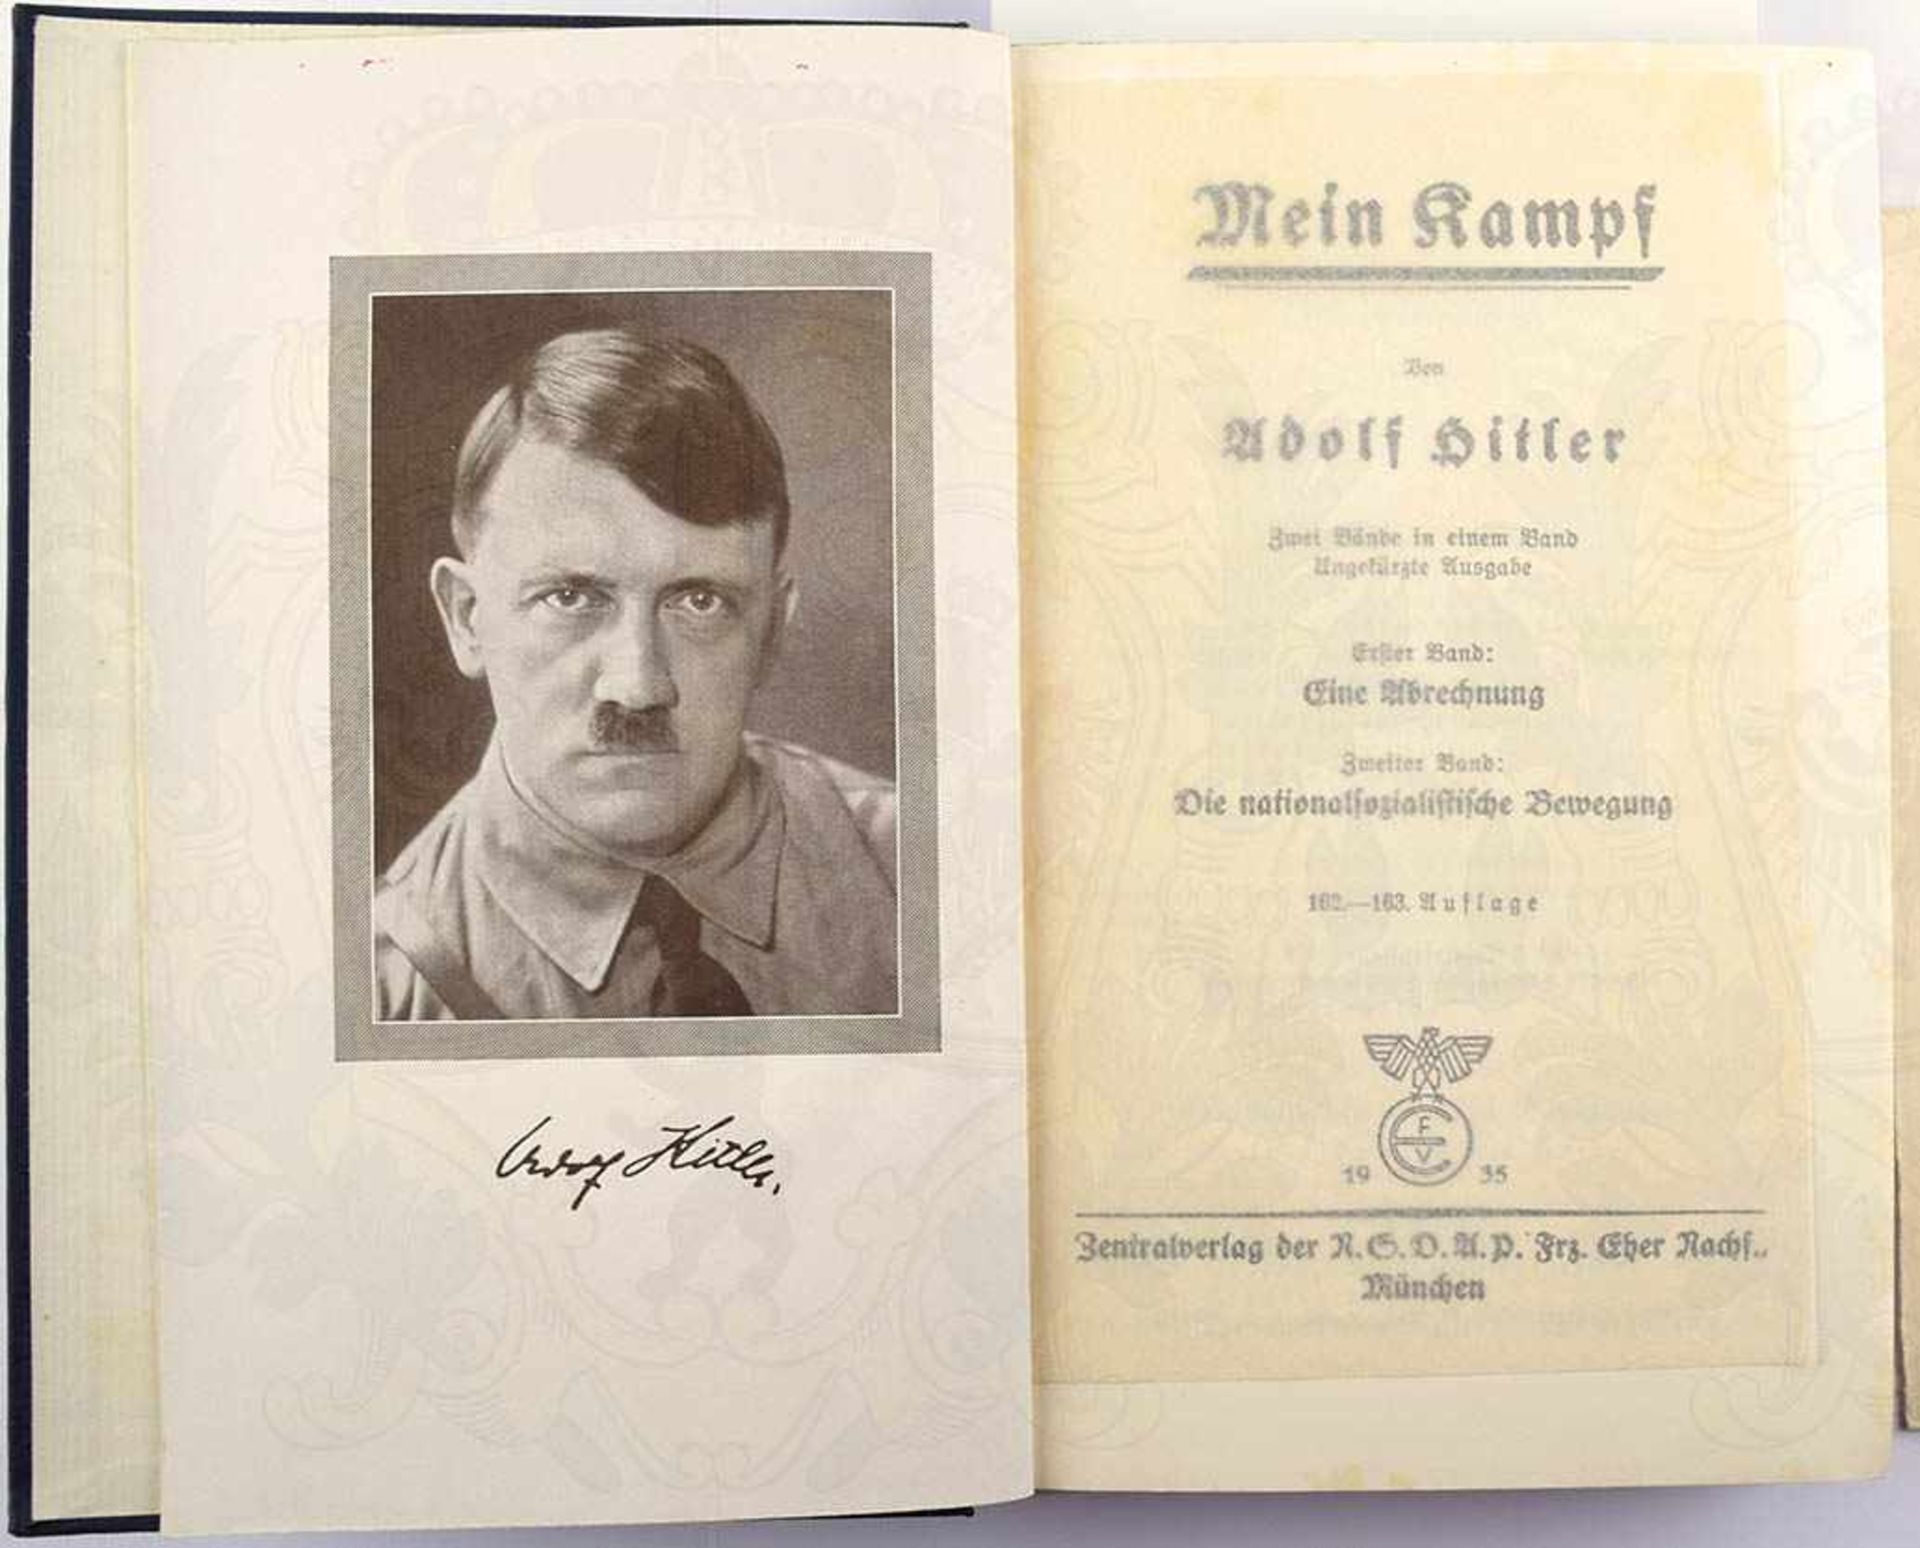 MEIN KAMPF, Adolf Hitler, Volksausgabe, Eher Verlag, München 1935, 781 S., 1 Porträtbild, - Bild 2 aus 3